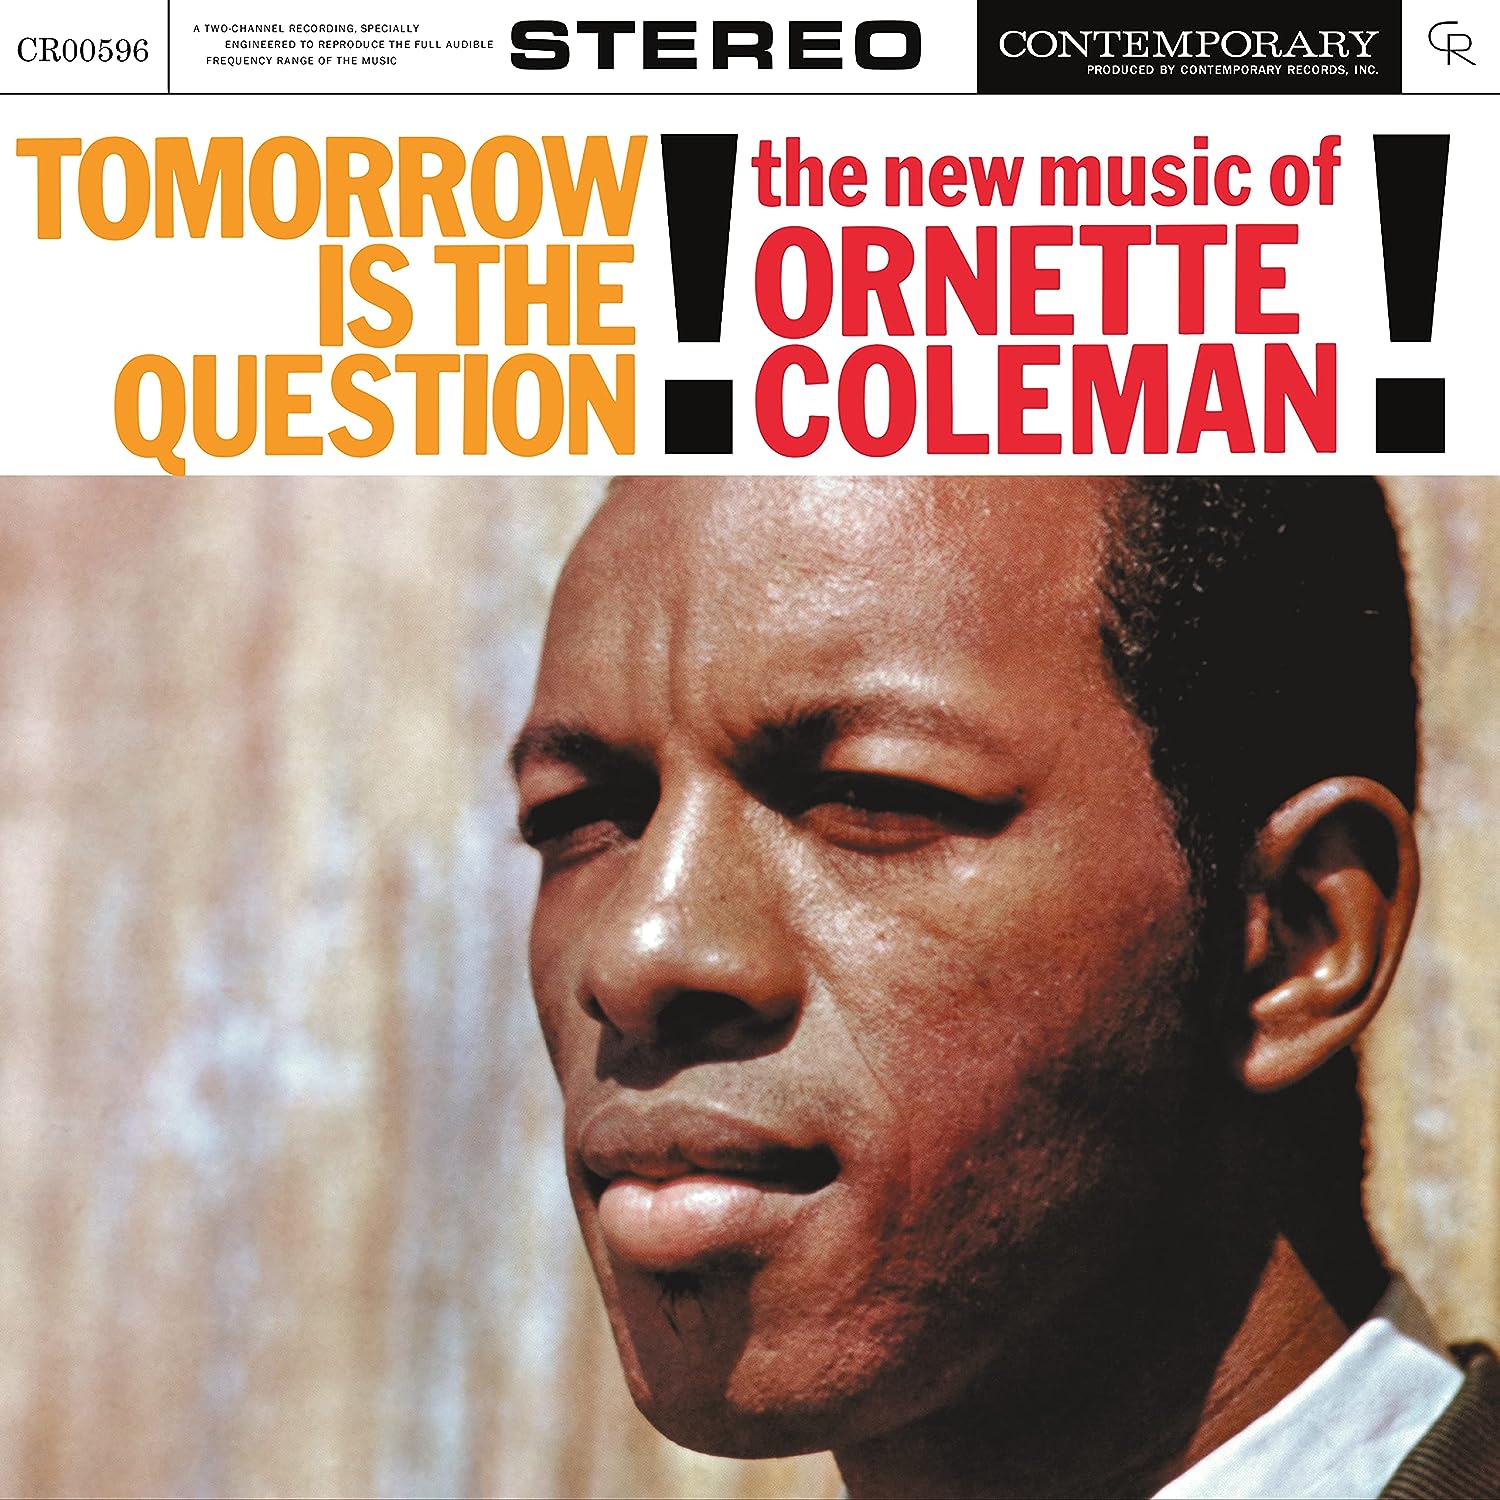 Джаз Universal (Aus) Ornette Coleman - Tomorrow Is The Question (Acoustic Sounds) (Black Vinyl LP) the ornette coleman double quartet – free jazz